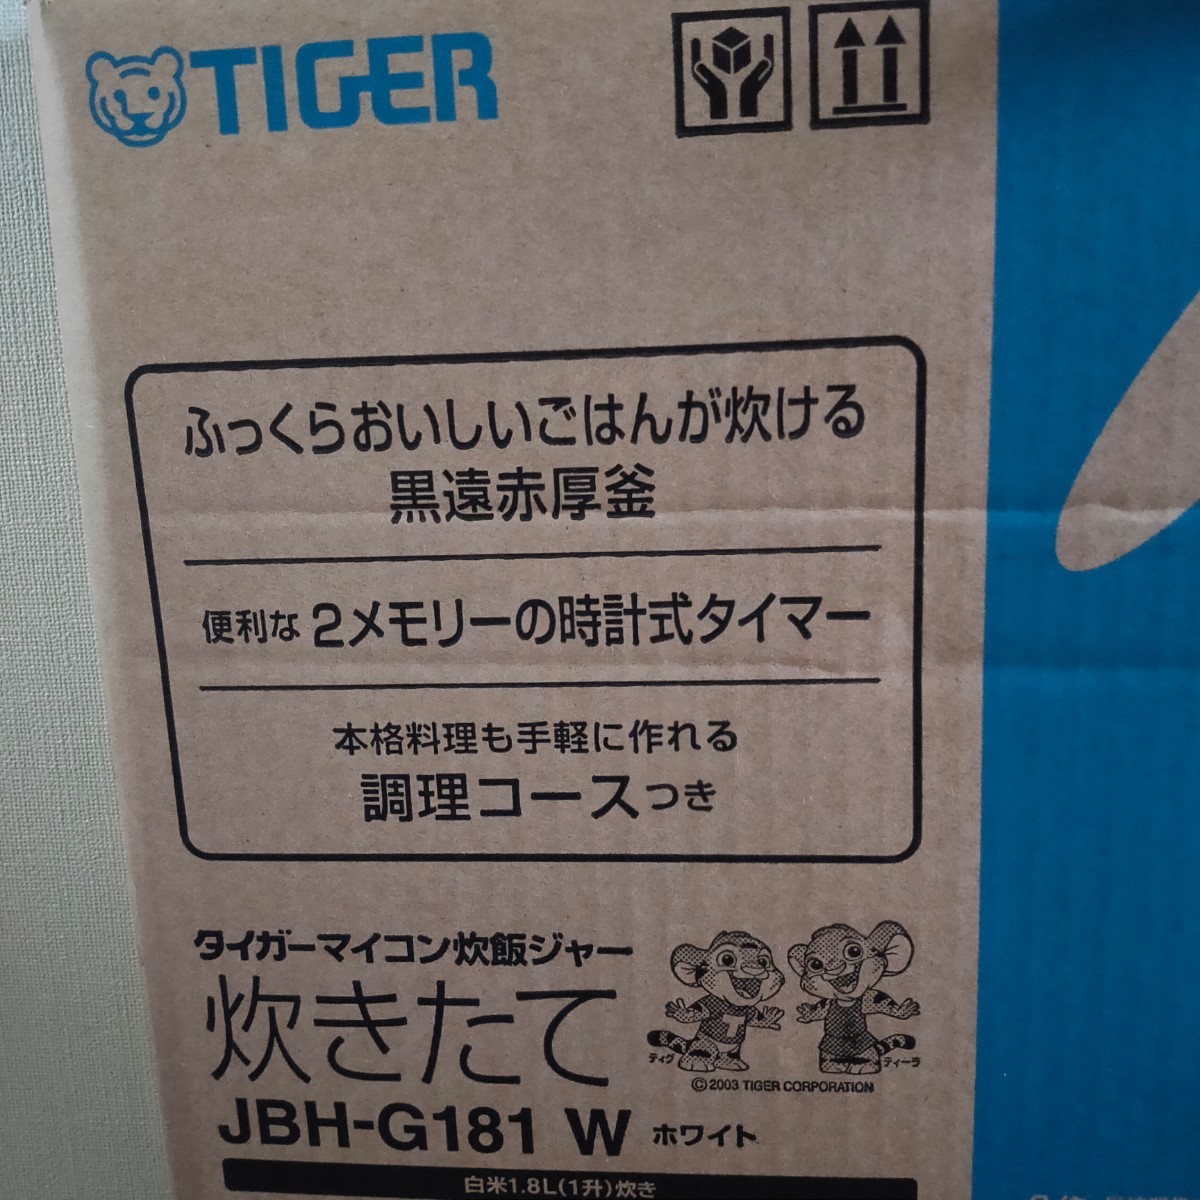 【新品未開封】TIGER★タイガー魔法瓶 JBH-G181(W)